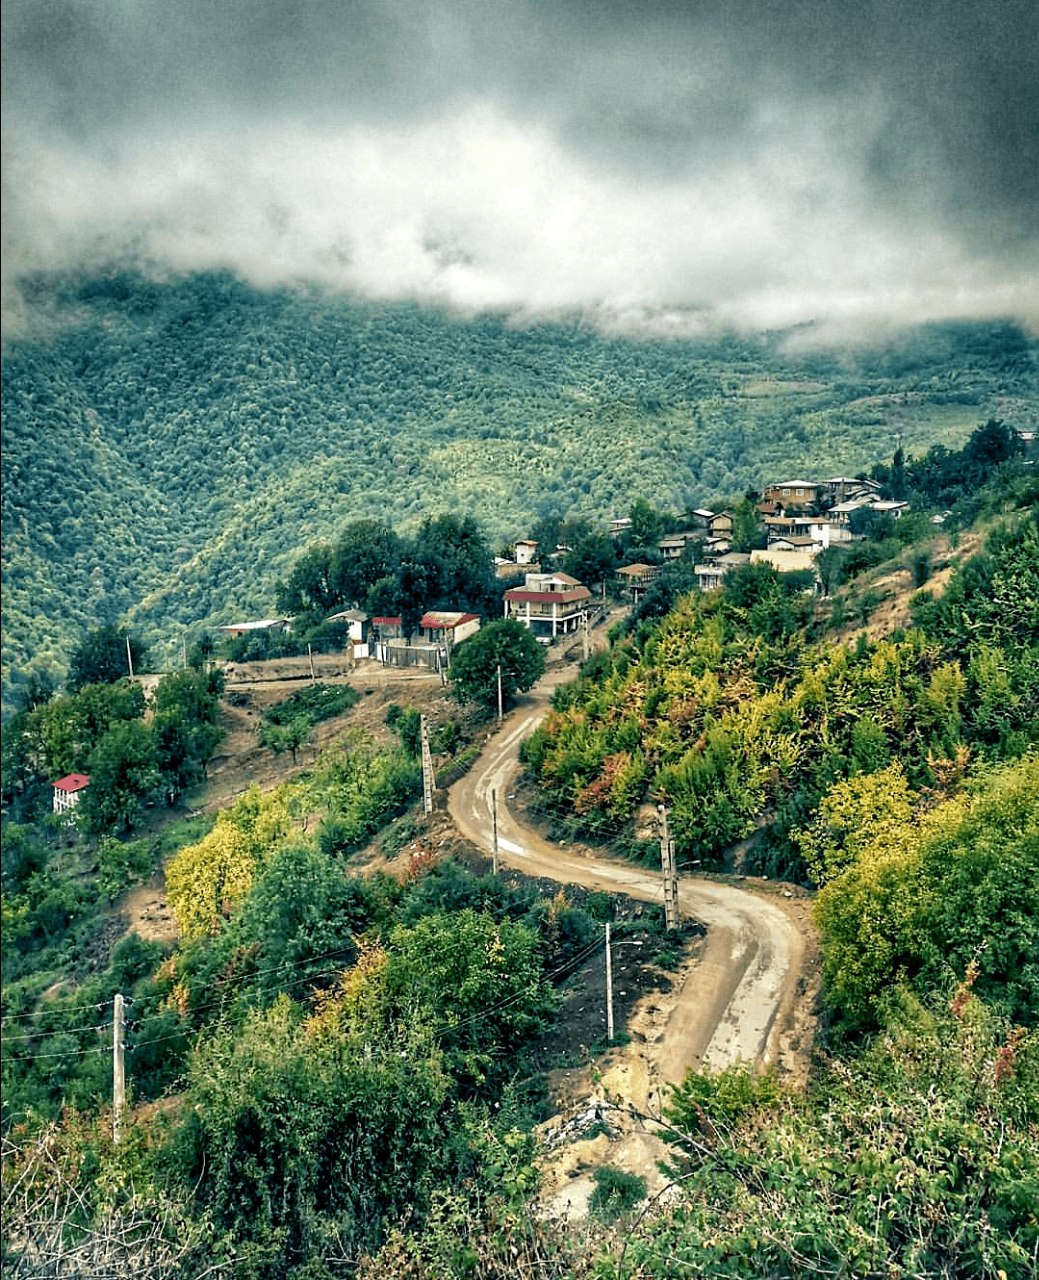 نمایی زیبا از روستای پاقلعه رامیان گلستان + عکس